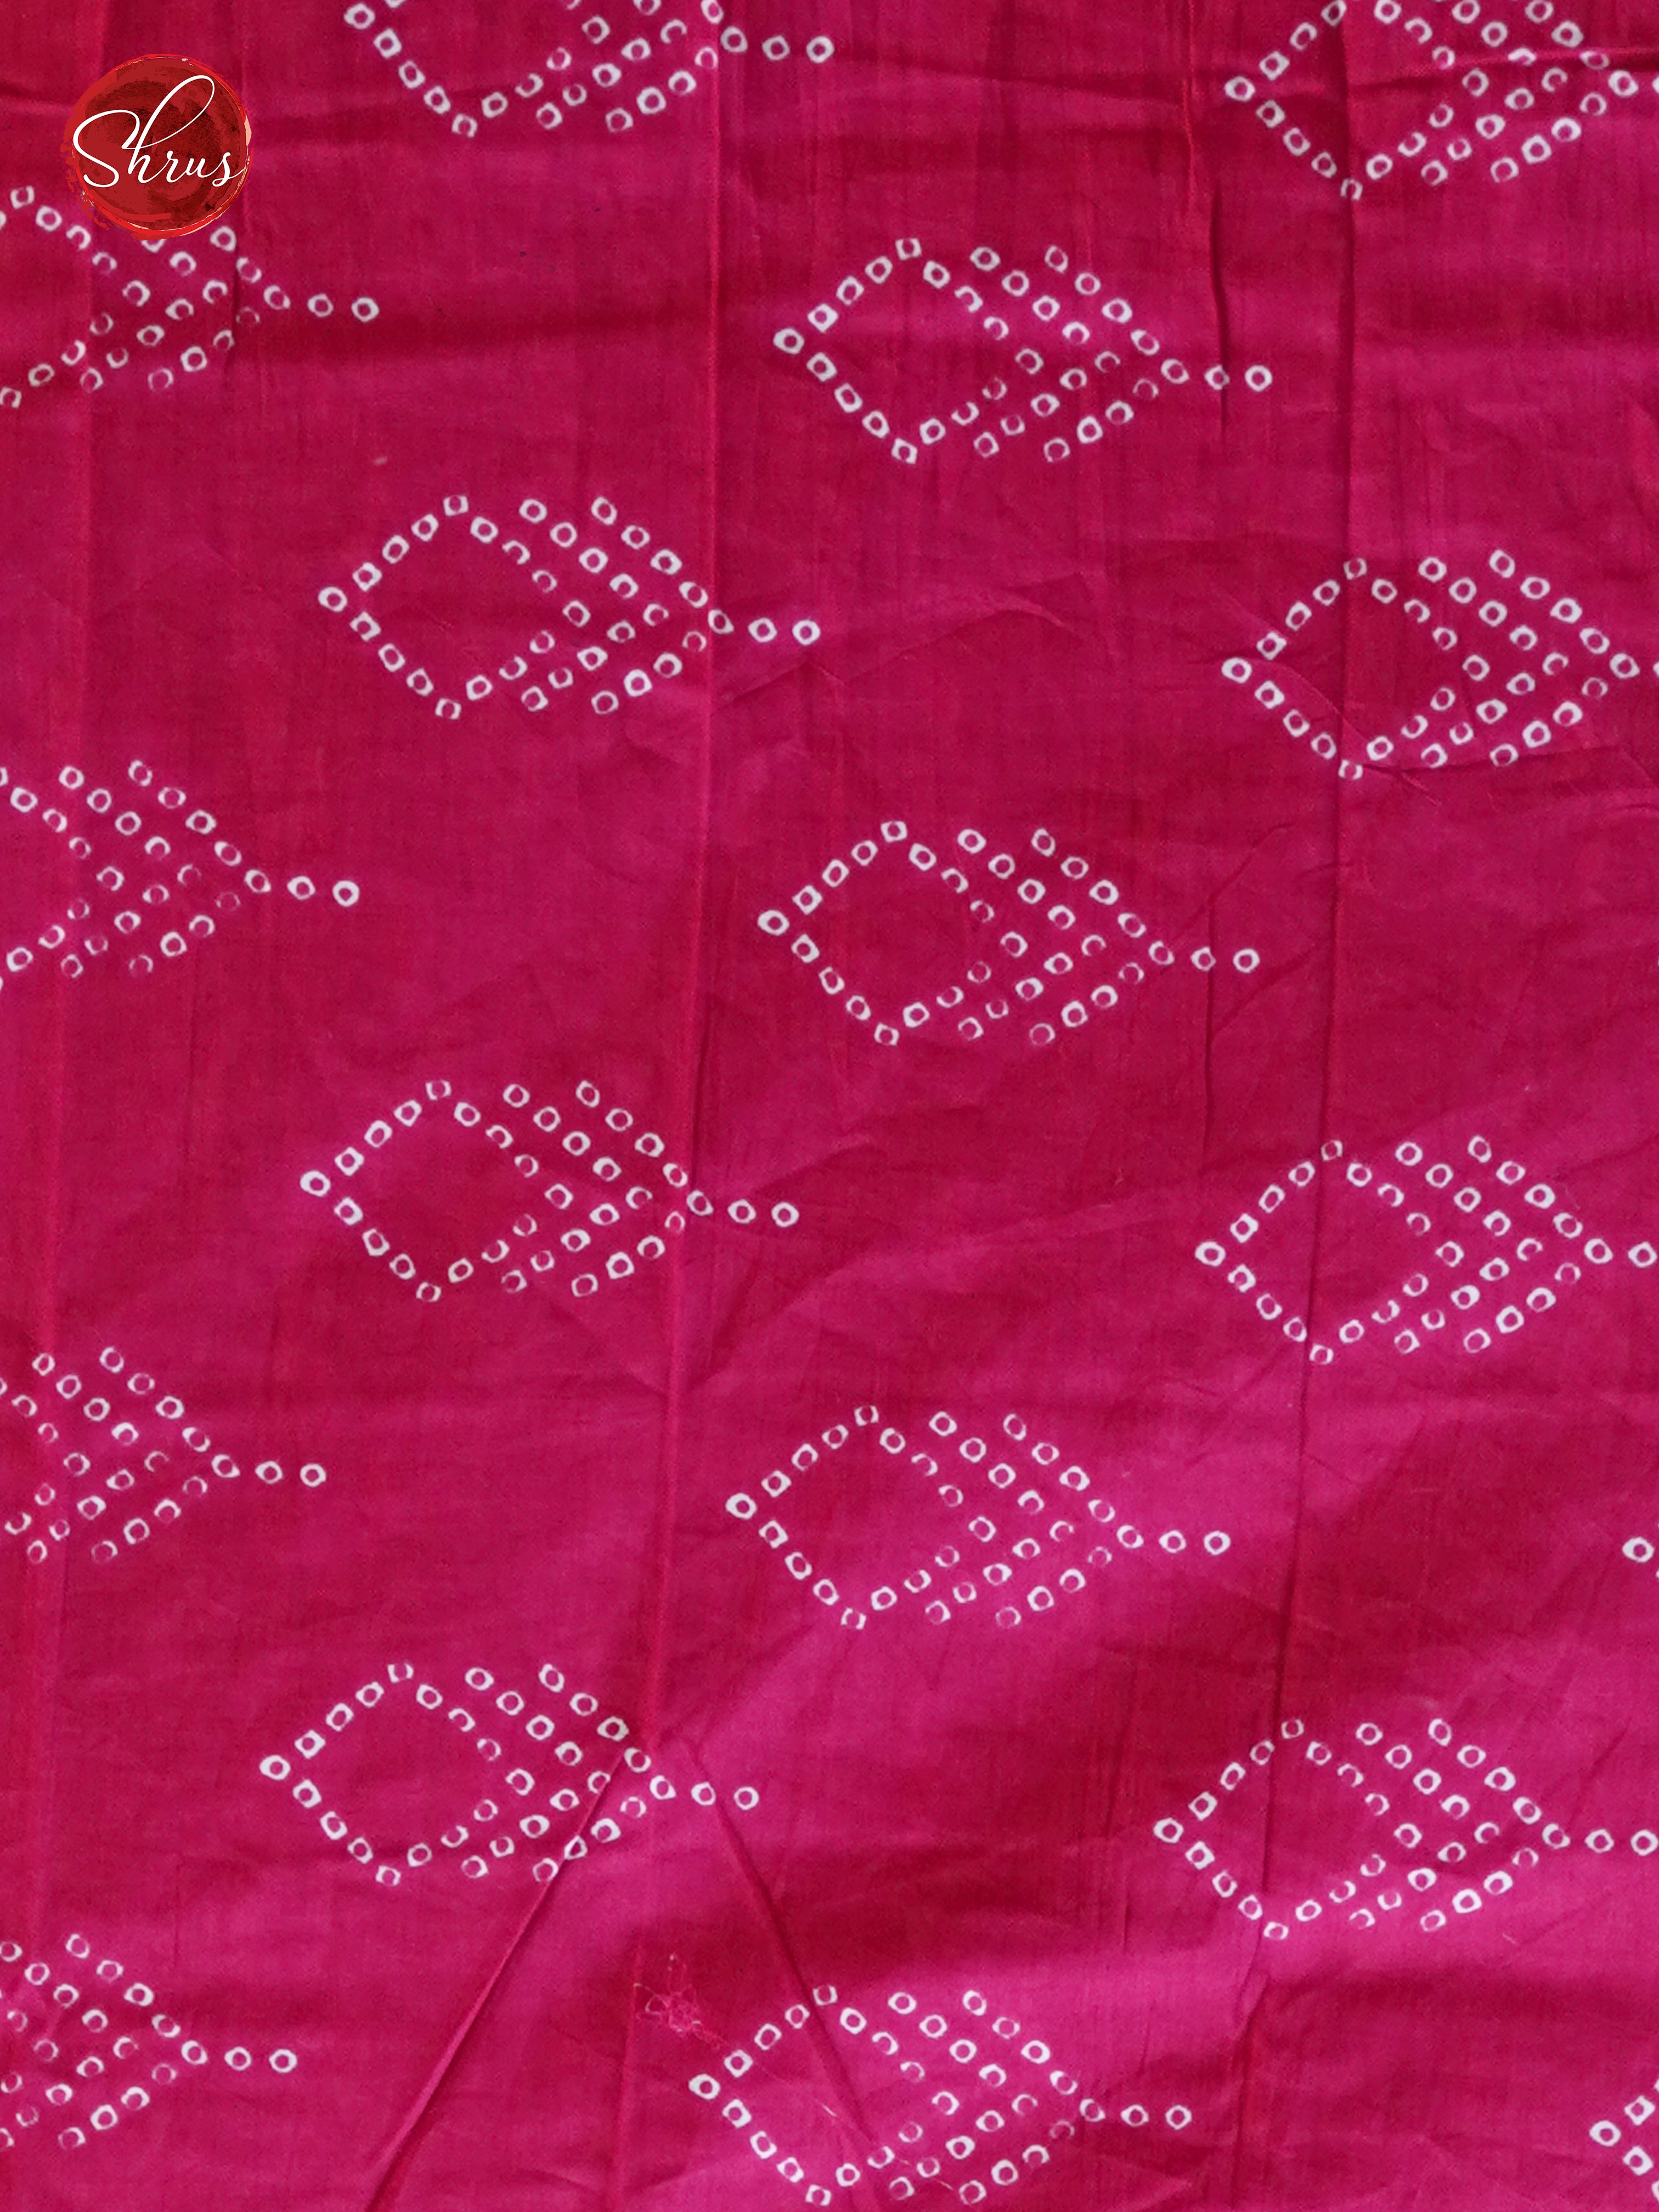 Blue & Pink - Jaipur cotton